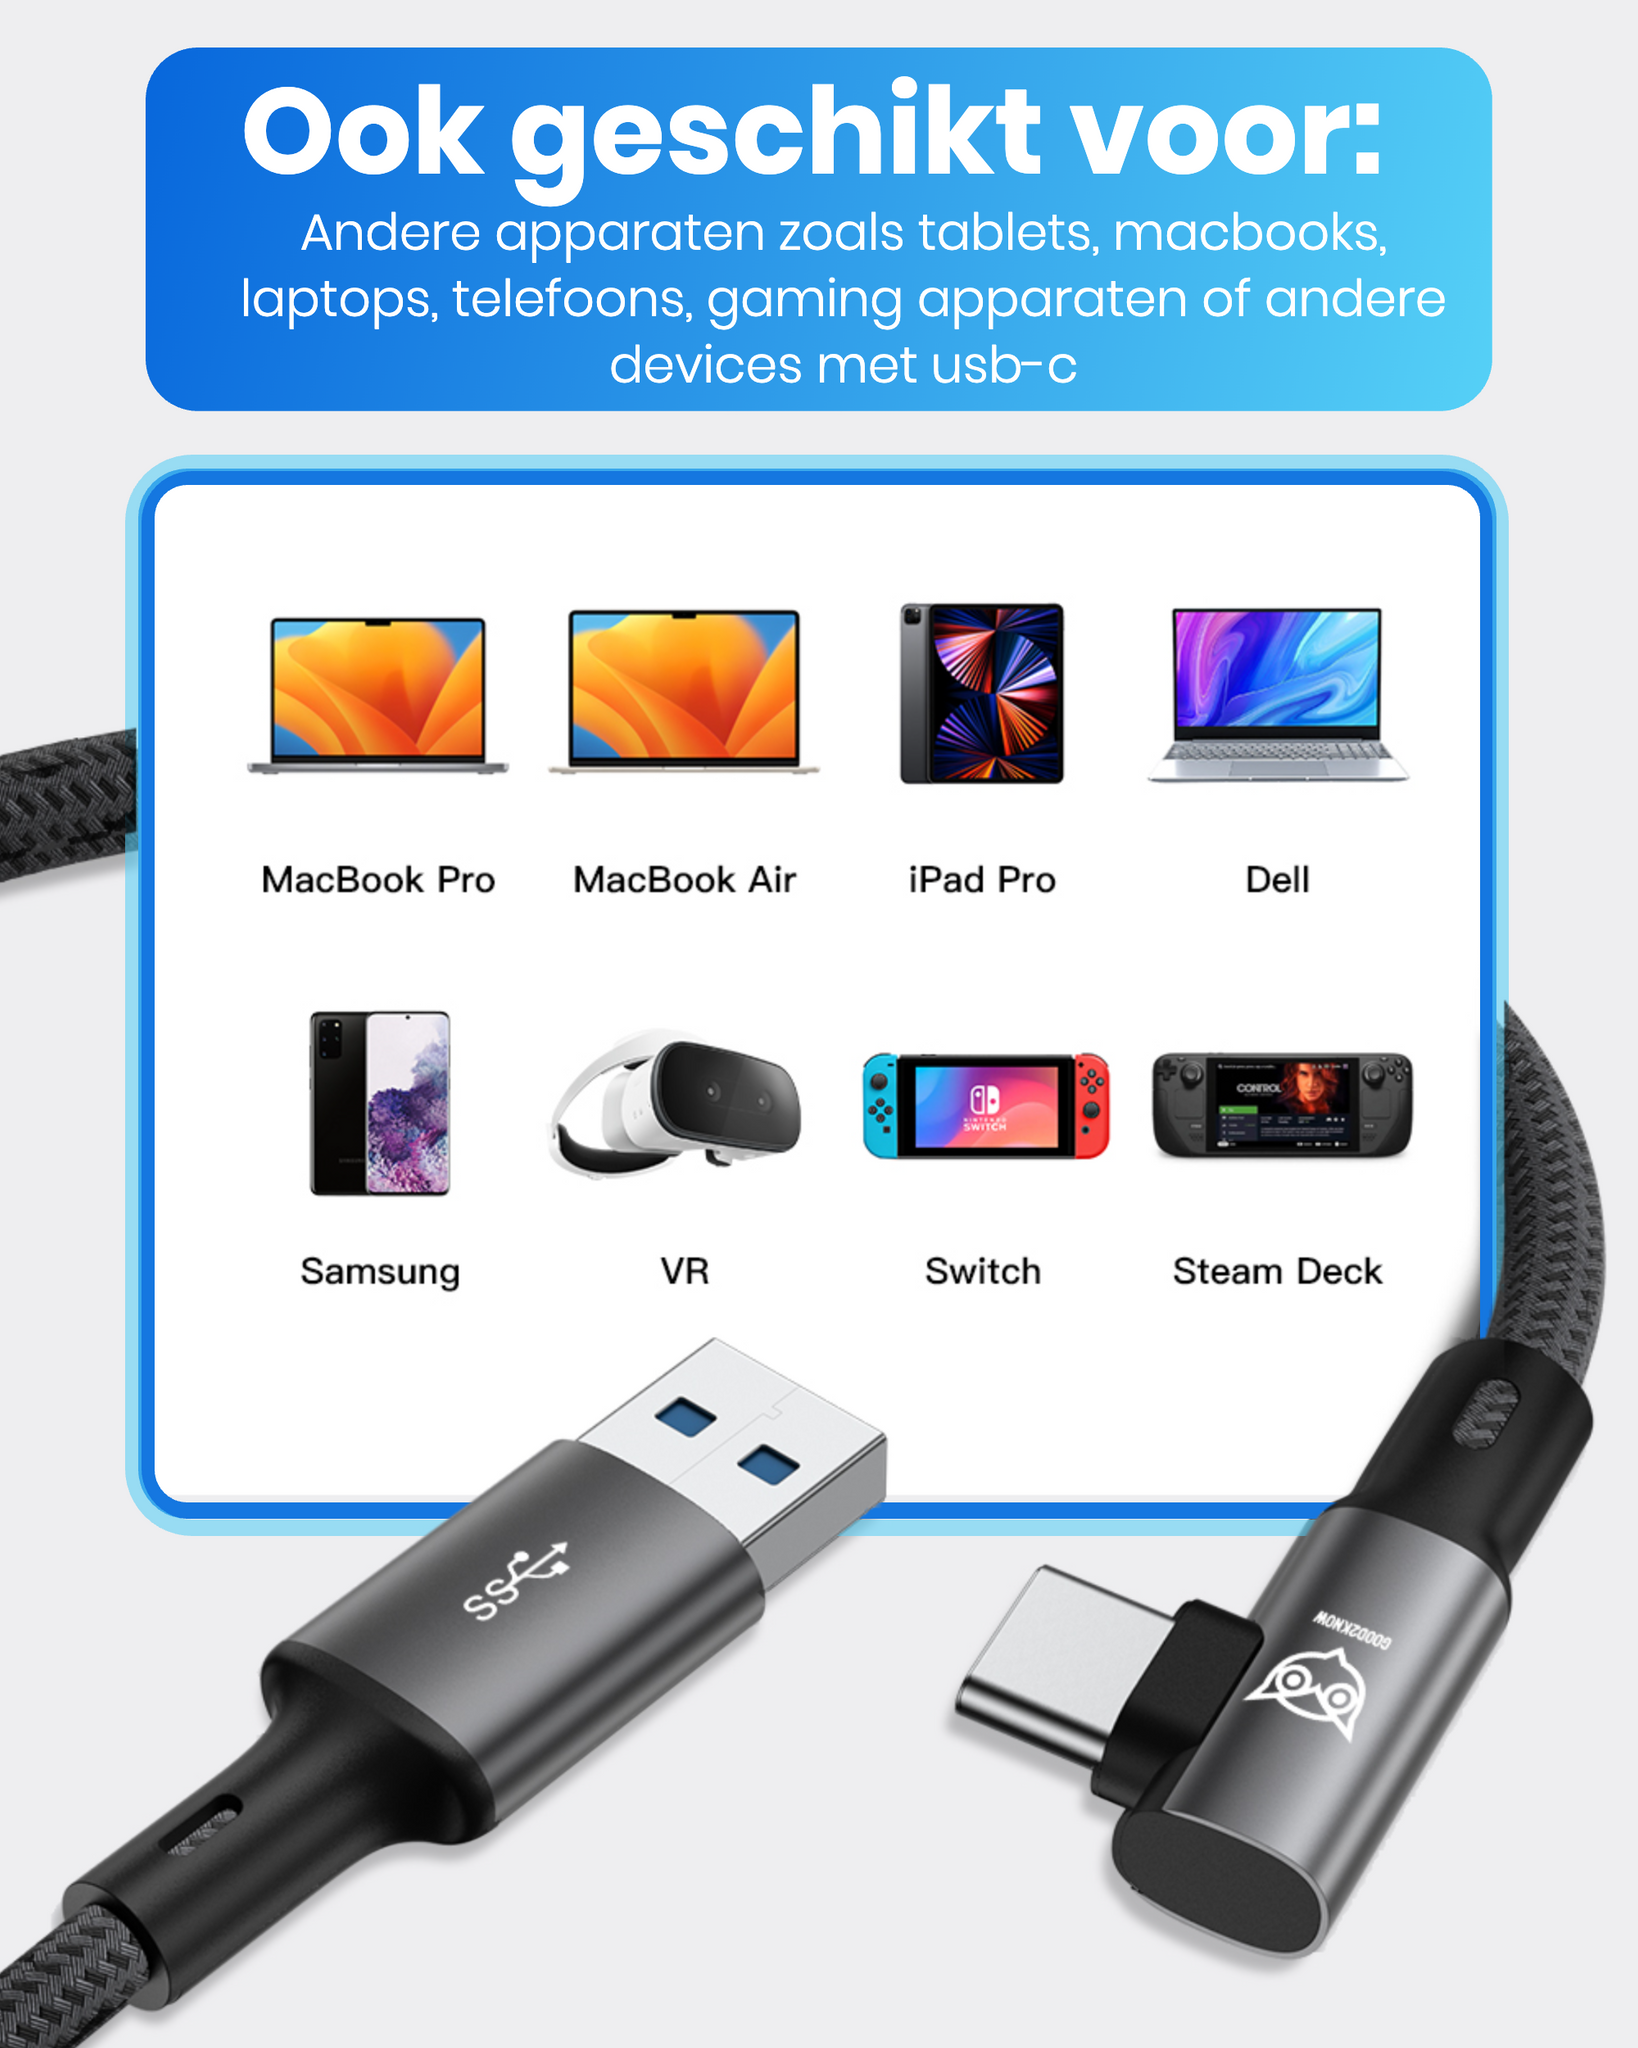 VR Kabel geschikt voor Oculus Quest 2, 1 en Meta 3 Link kabel - USB A - 5 Meter - VR bril